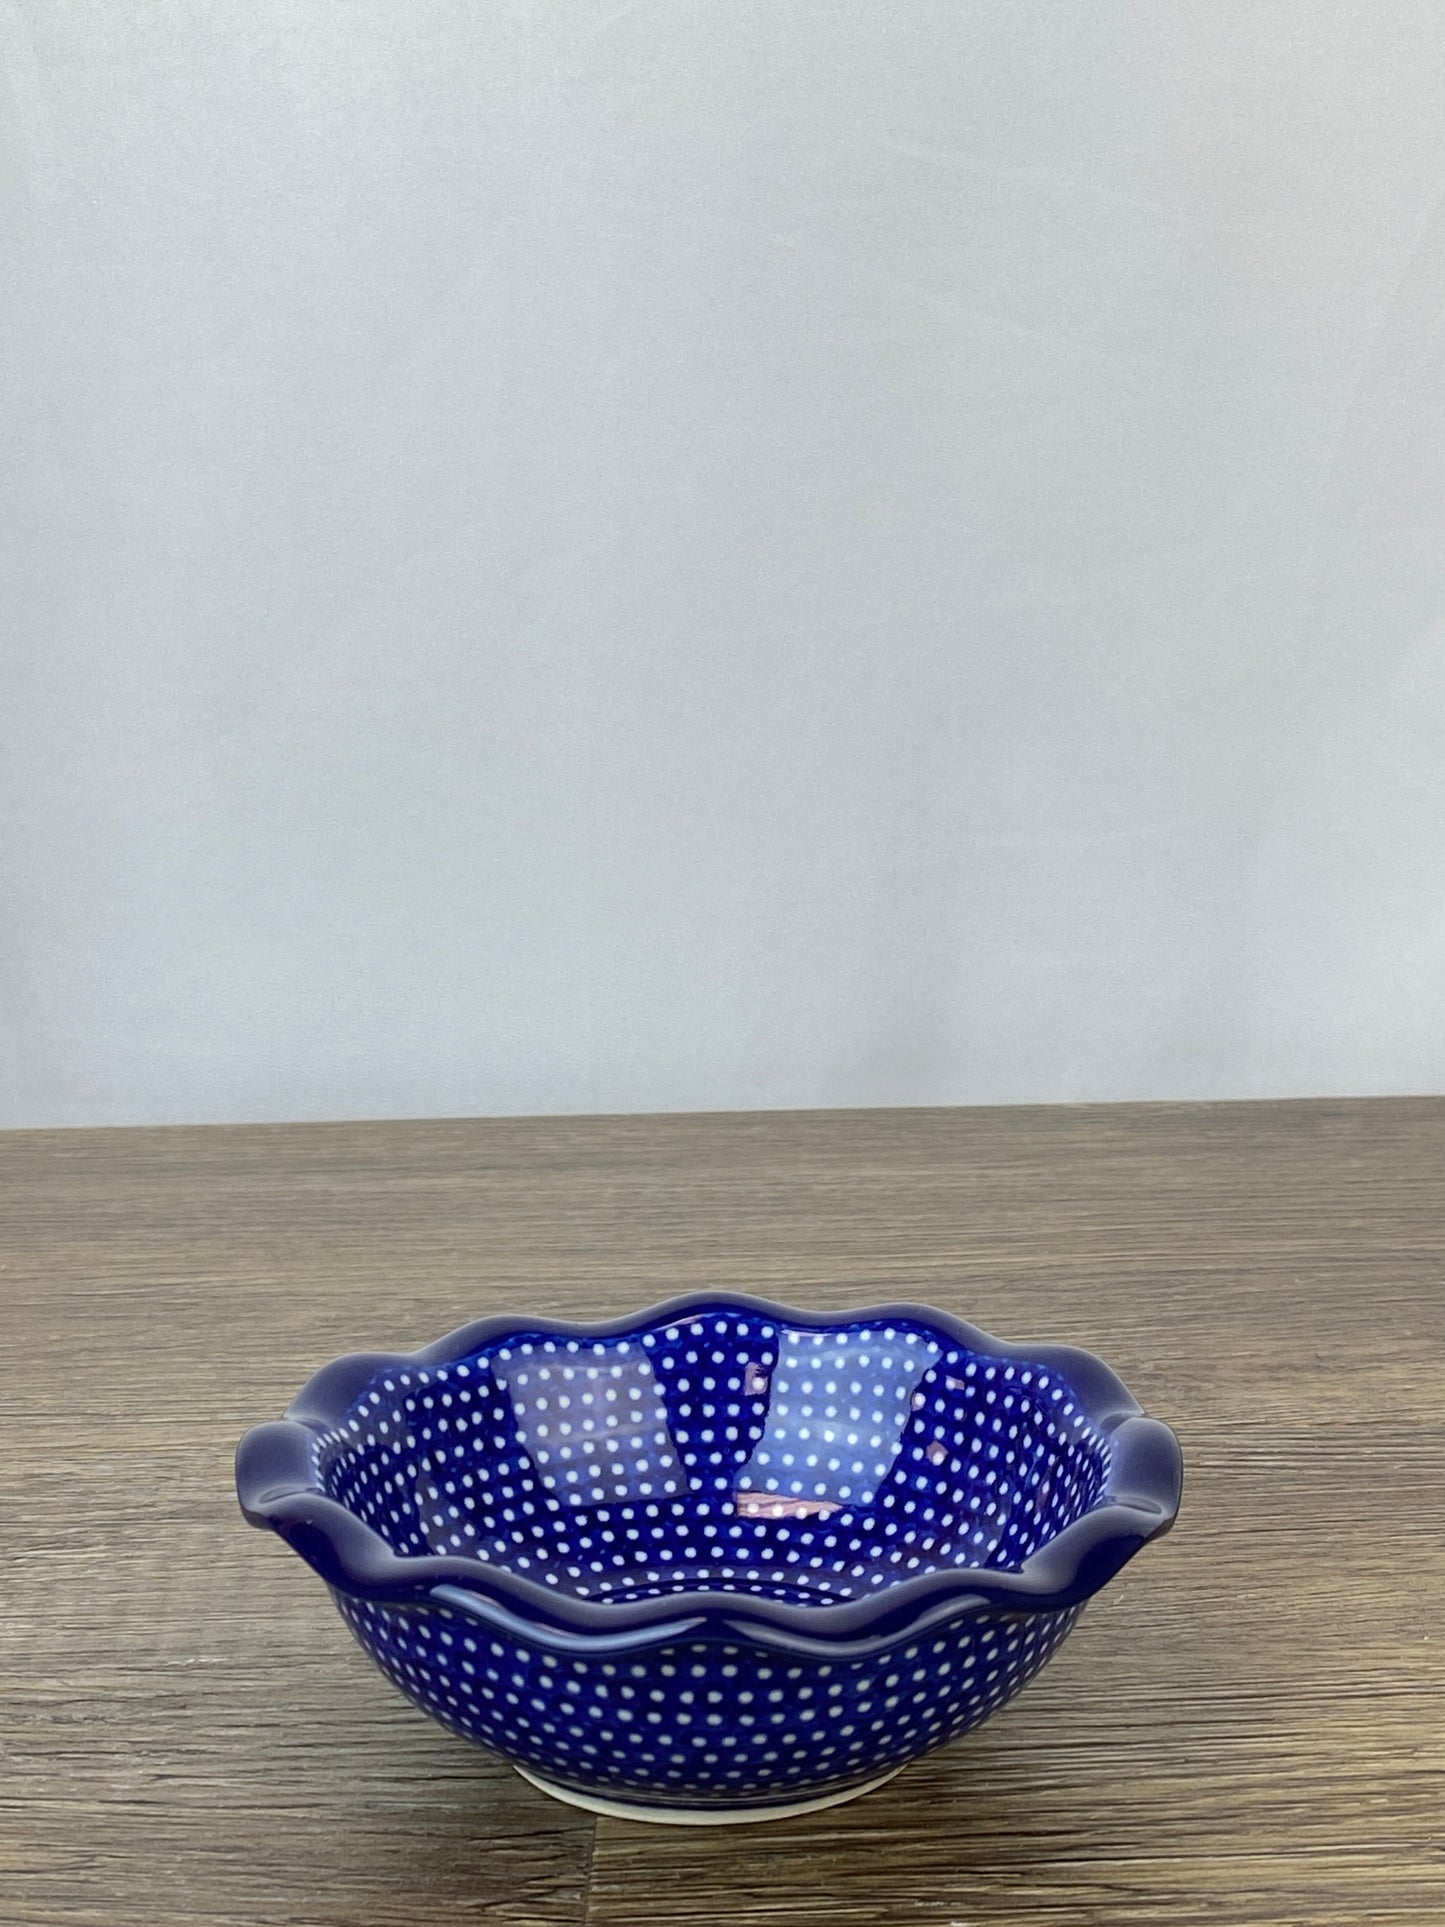 Unikat Small Ruffled Bowl - Shape 627 - Pattern U1123